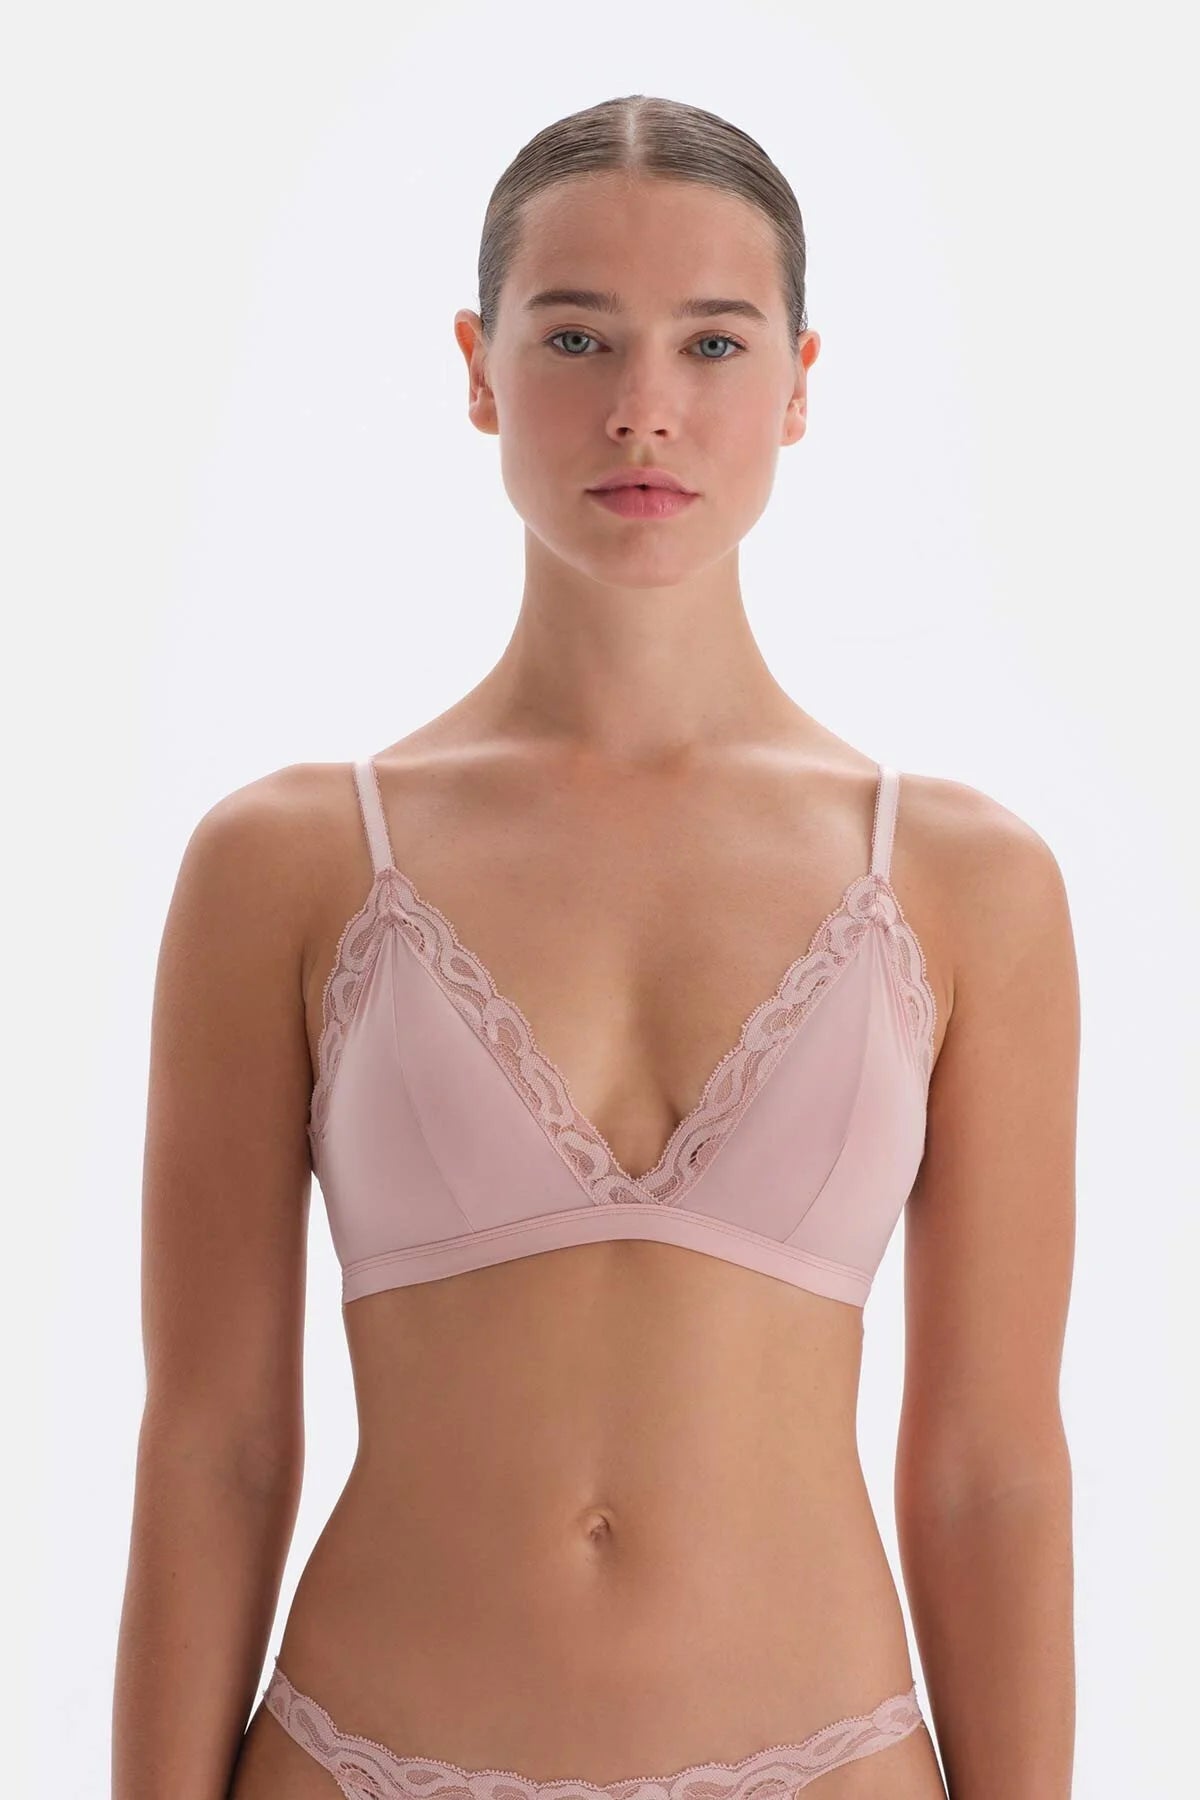 zanvin Wireless Bra, Woman's Comfortable Lace Breathable Bra Underwear No  Rims,Pink,XXXL 